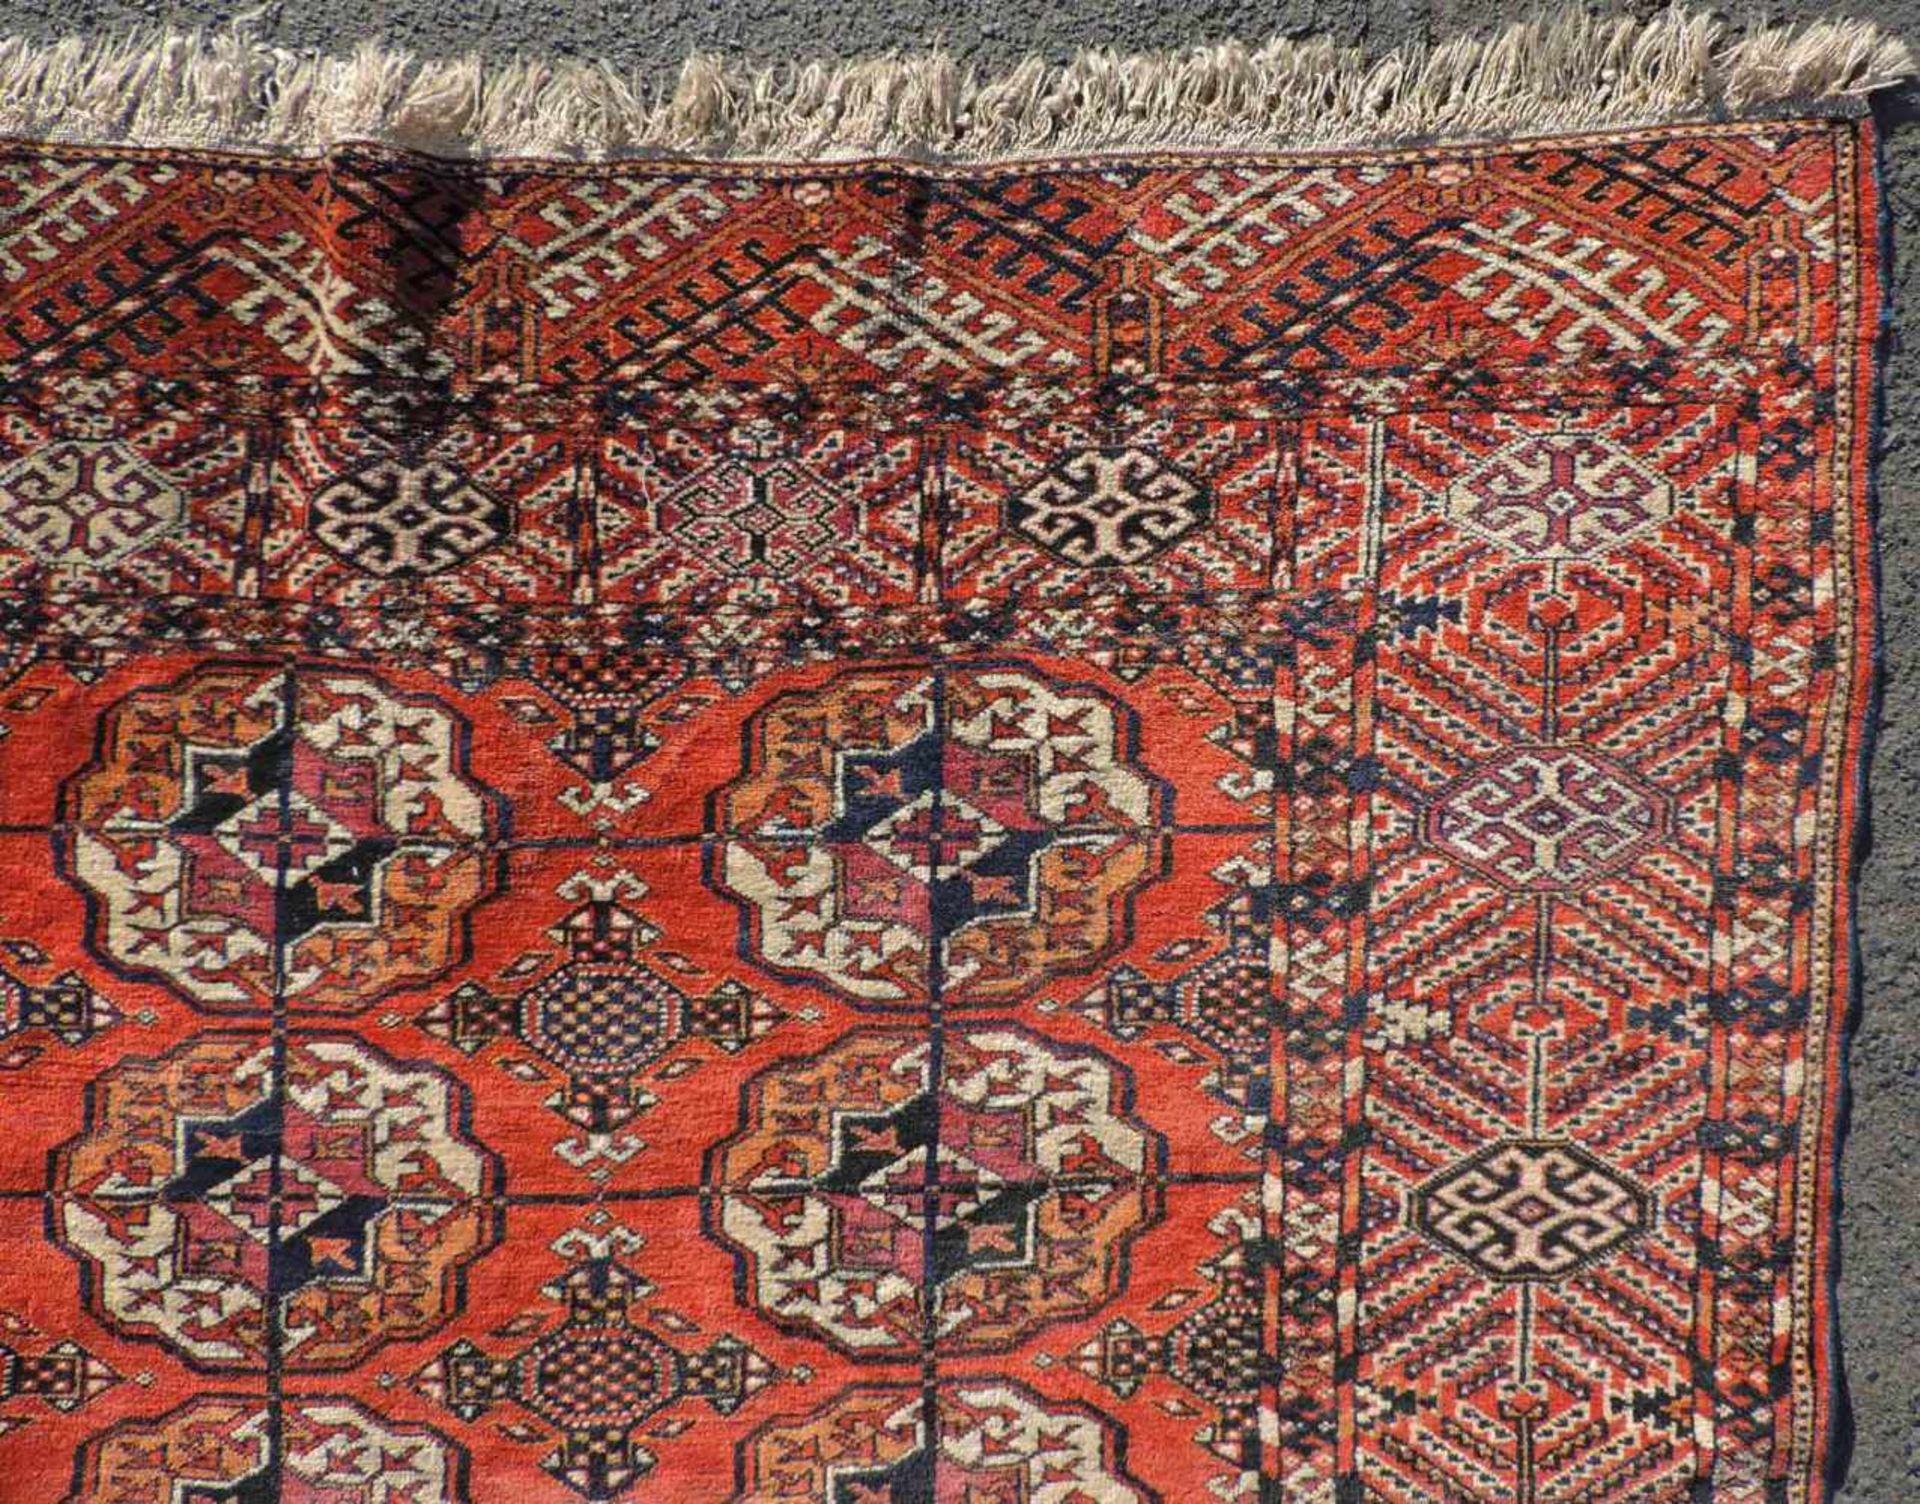 Jomud Stammesteppich. Iran. Antik, um 1910.309 cm x 210 cm. Handgeknüpft. Wolle auf Wolle. Göklan - Bild 7 aus 8